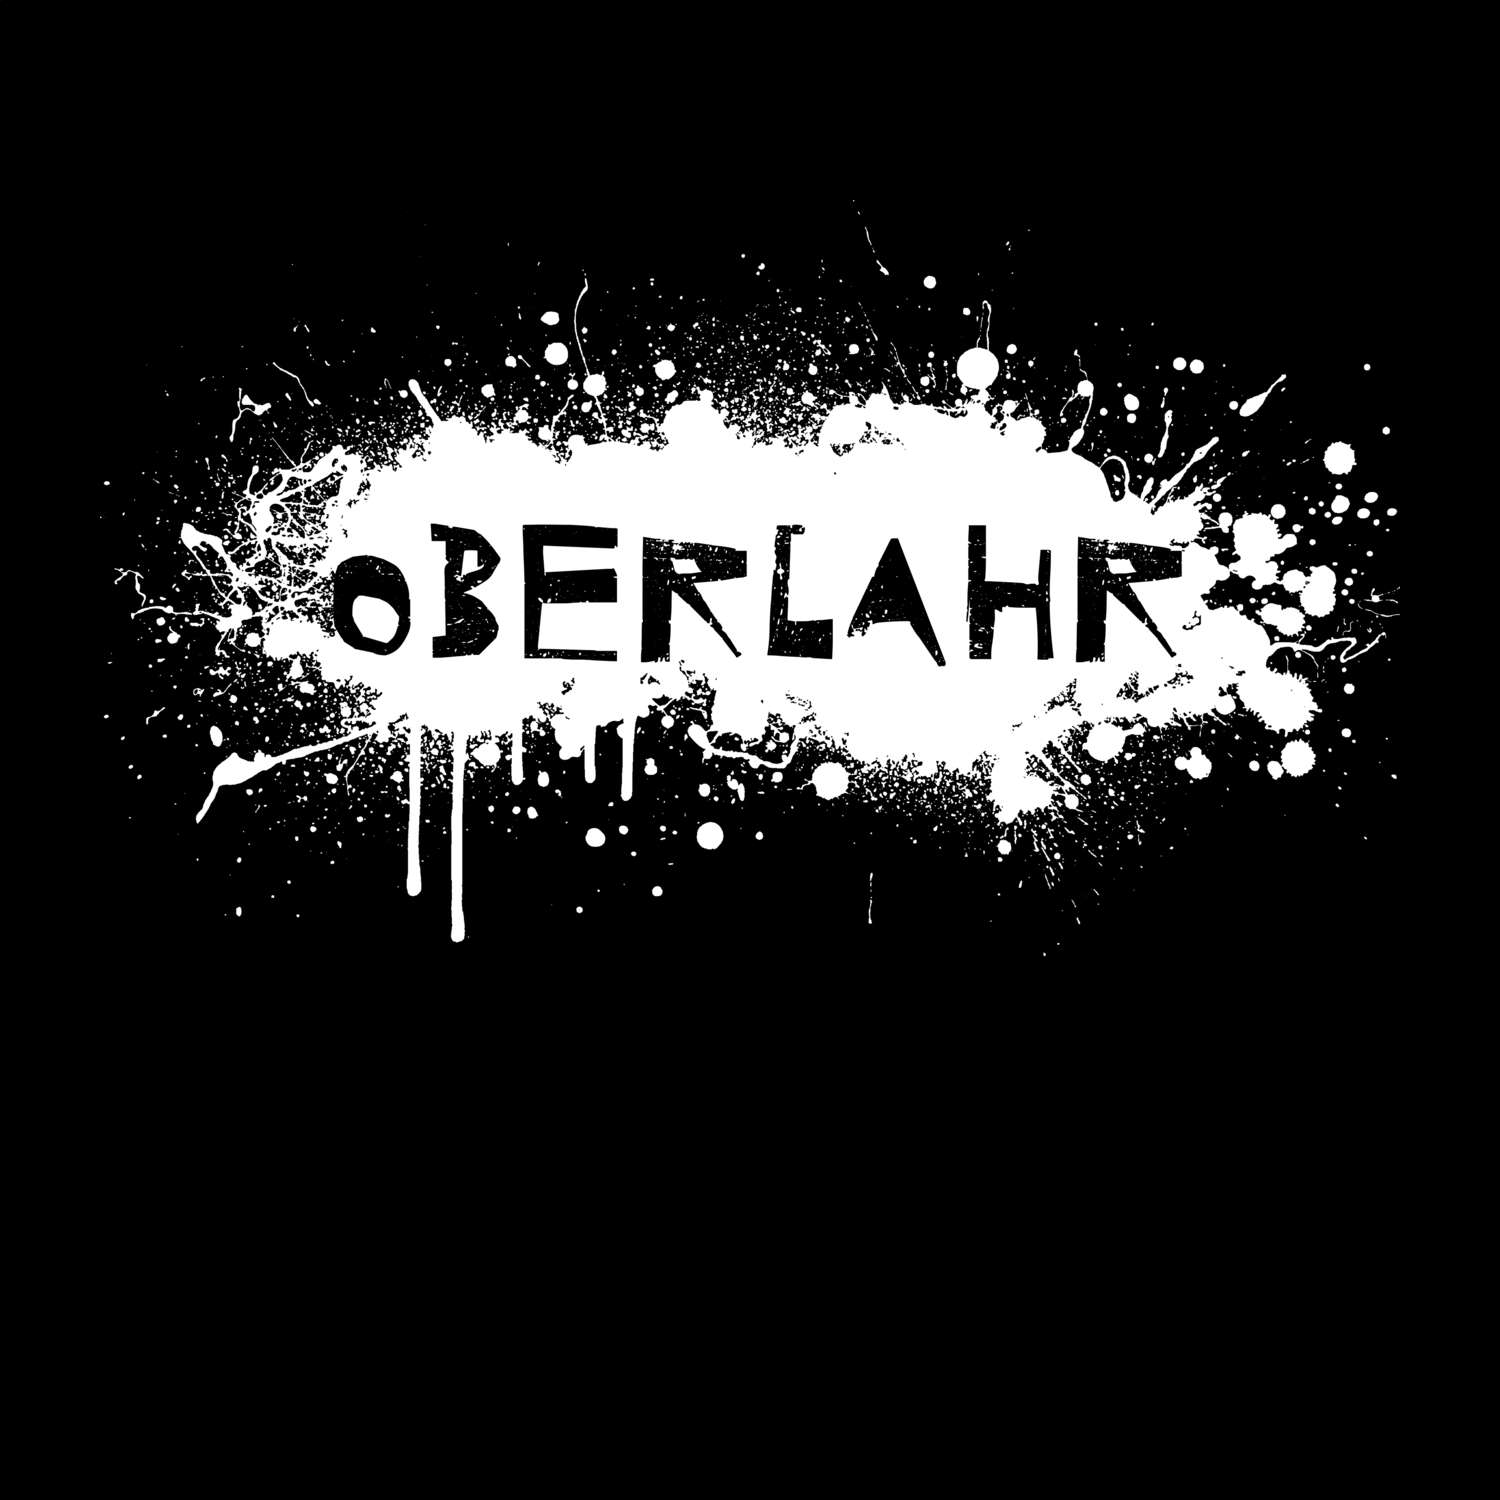 Oberlahr T-Shirt »Paint Splash Punk«